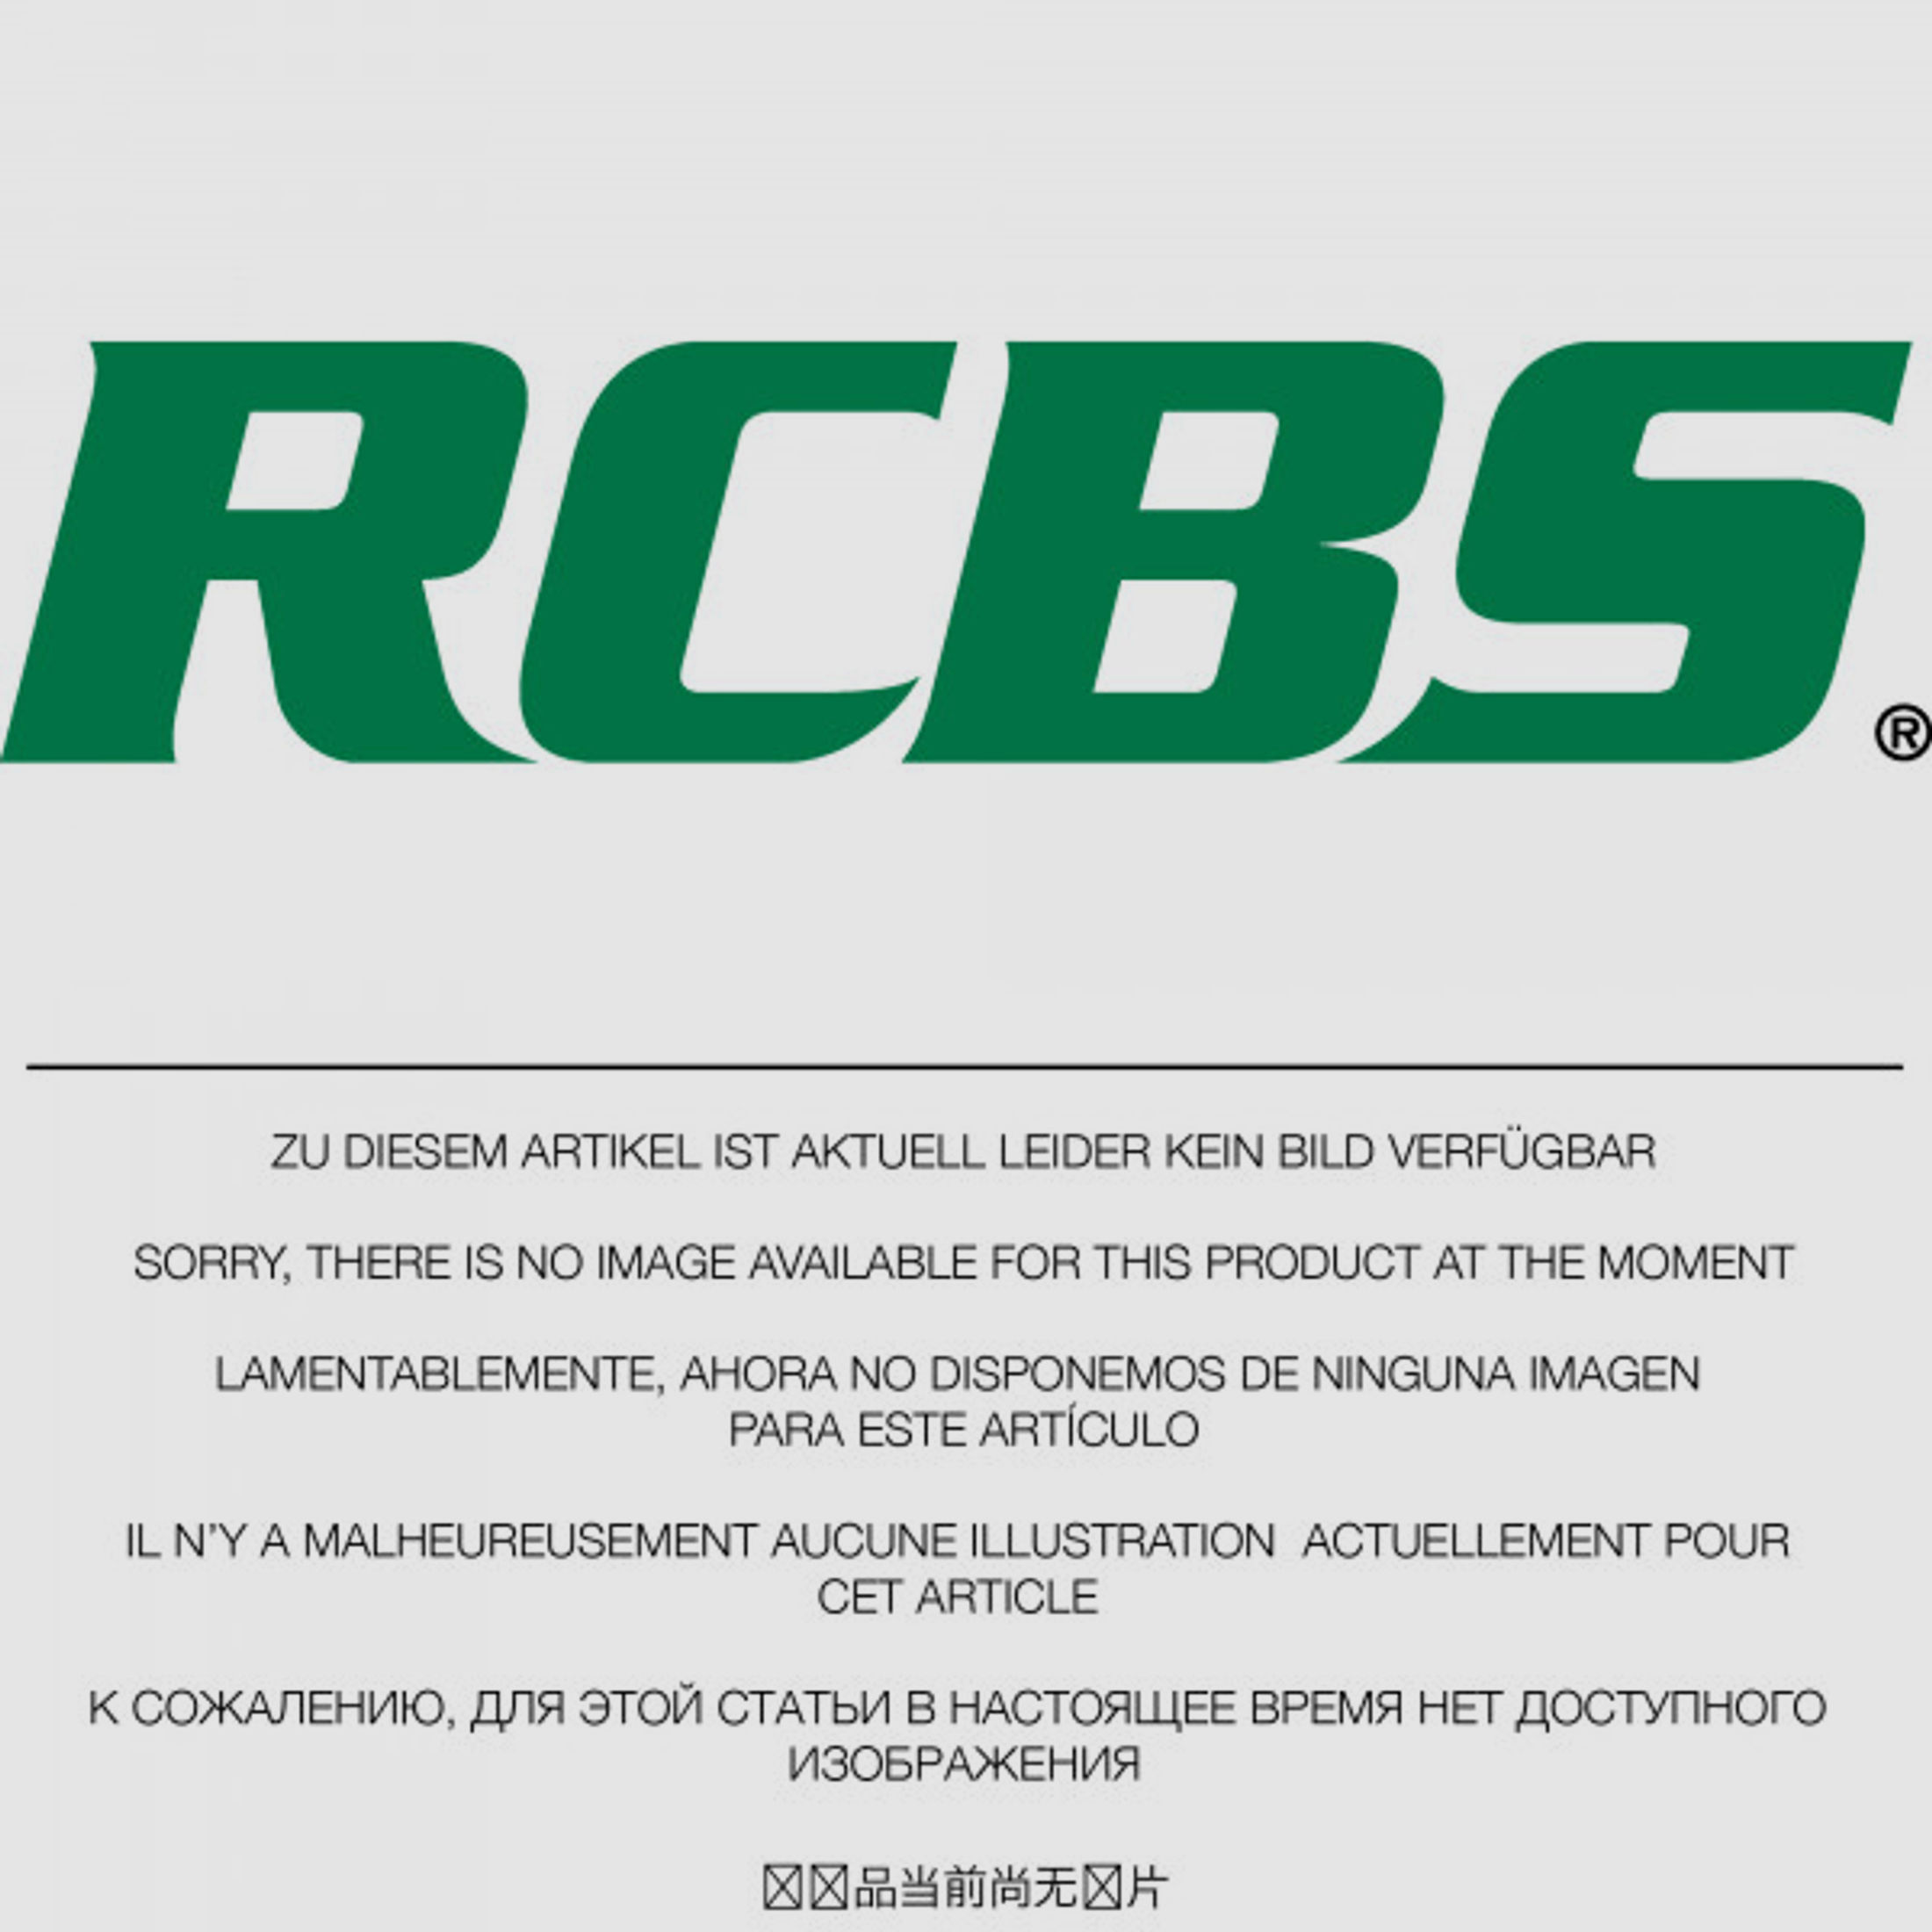 RCBS Lube-A-Matic Top Punch Geschoss Setzstempel Nr. 636 #85636